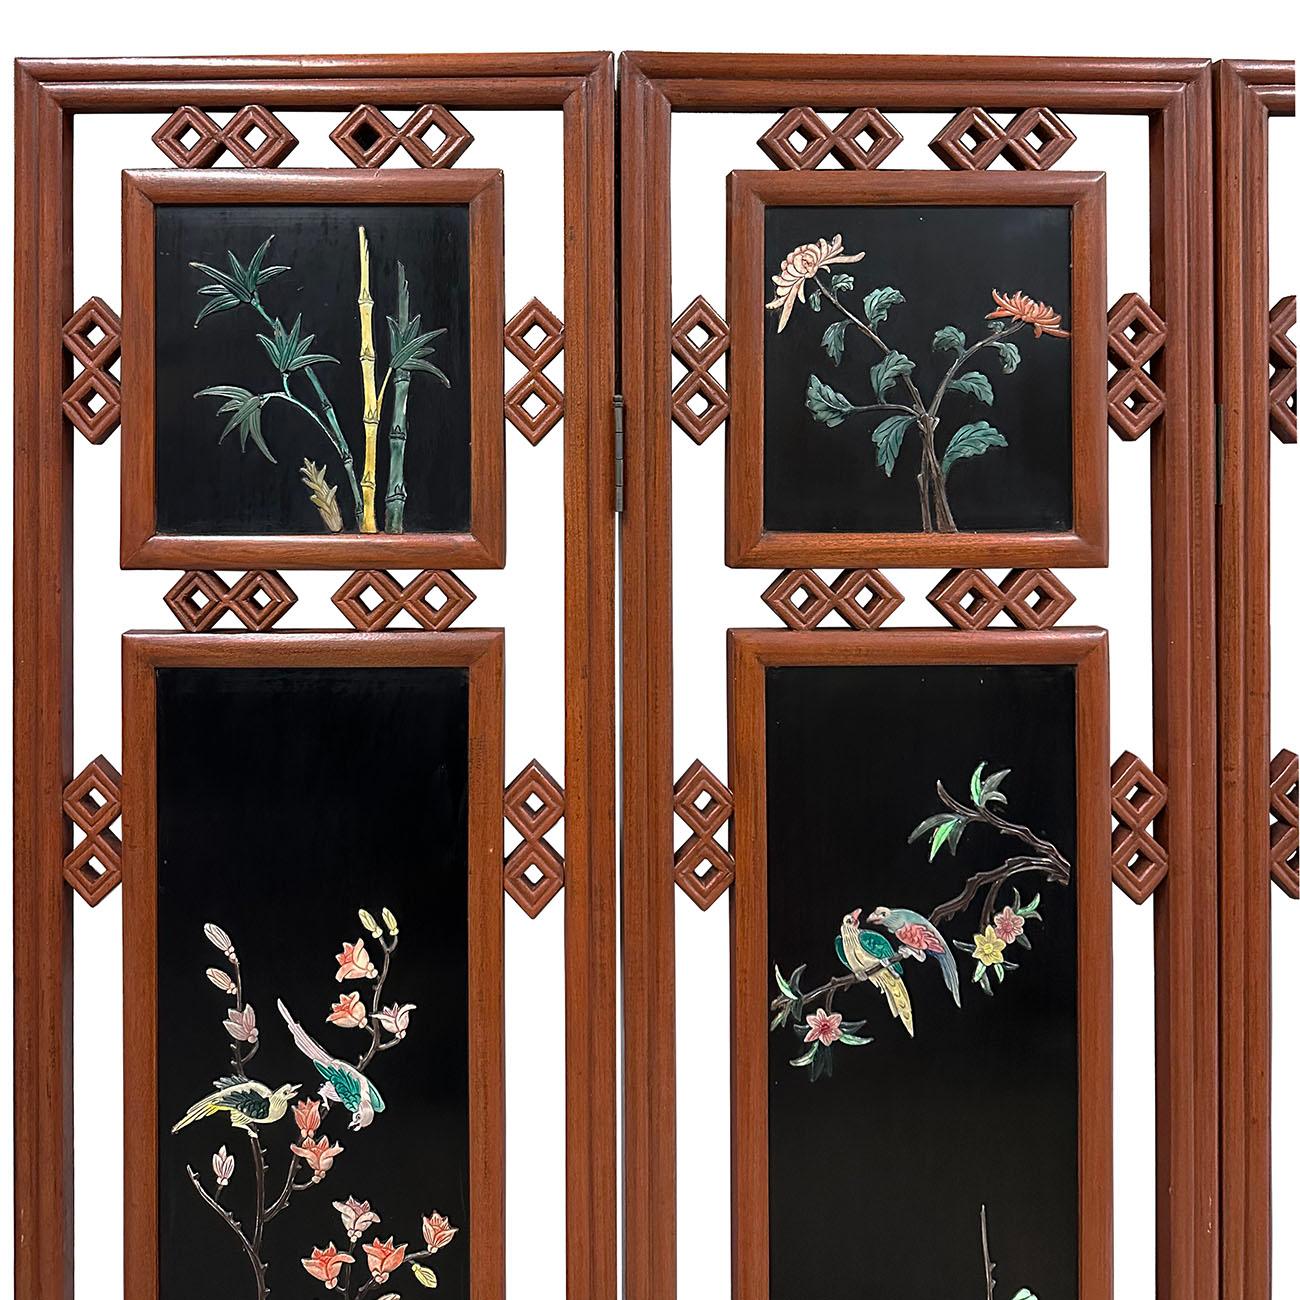 Il s'agit d'un ensemble de 4 panneaux de chinois vintage ouvert sculpté écran en bois qui à être utilisé comme la pièce section panneaux dans la Chine ancienne qui sont mis ensemble pour faire dans un écran. Depuis l'Antiquité, les paravents ornent